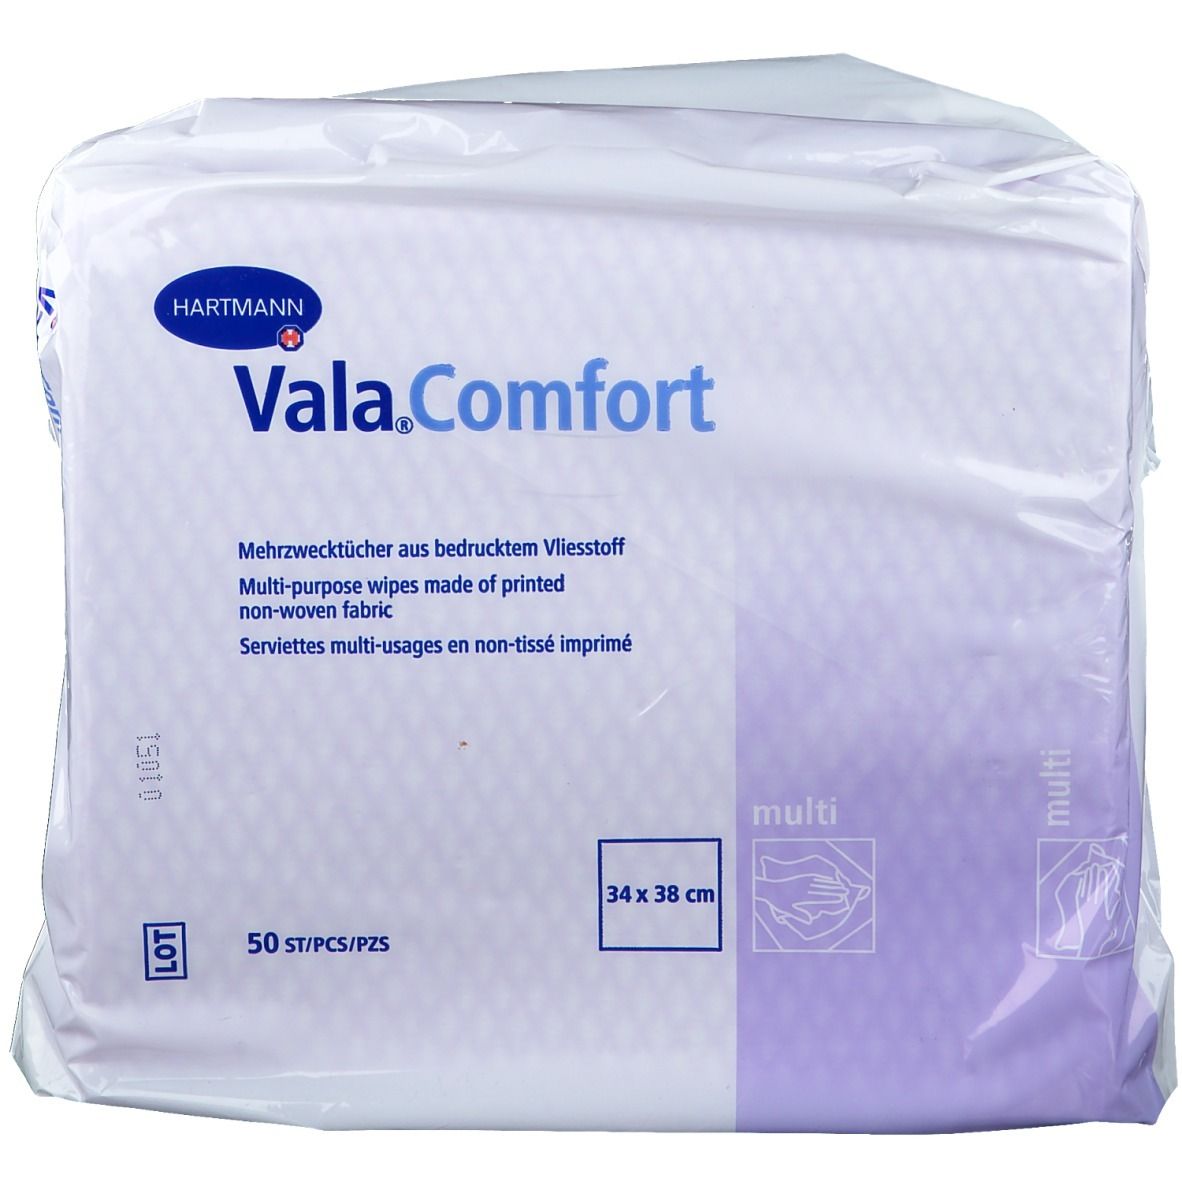 Vala®Comfort multi Einmal-Mehrzwecktücher 34 x 38 cm